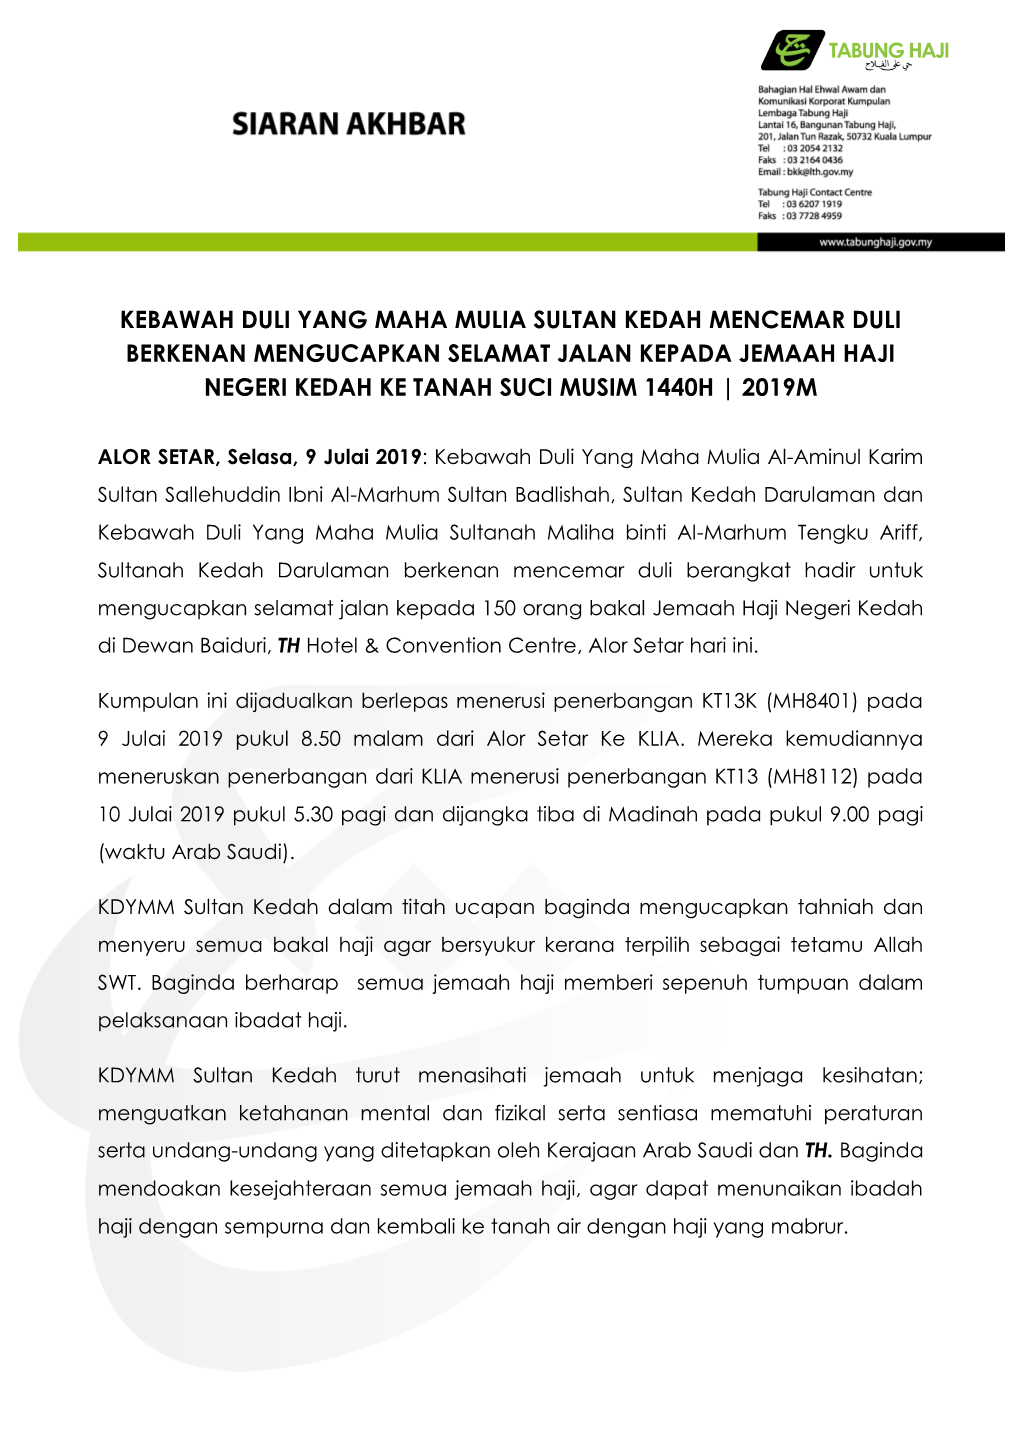 Kebawah Duli Yang Maha Mulia Sultan Kedah Mencemar Duli Berkenan Mengucapkan Selamat Jalan Kepada Jemaah Haji Negeri Kedah Ke Tanah Suci Musim 1440H | 2019M